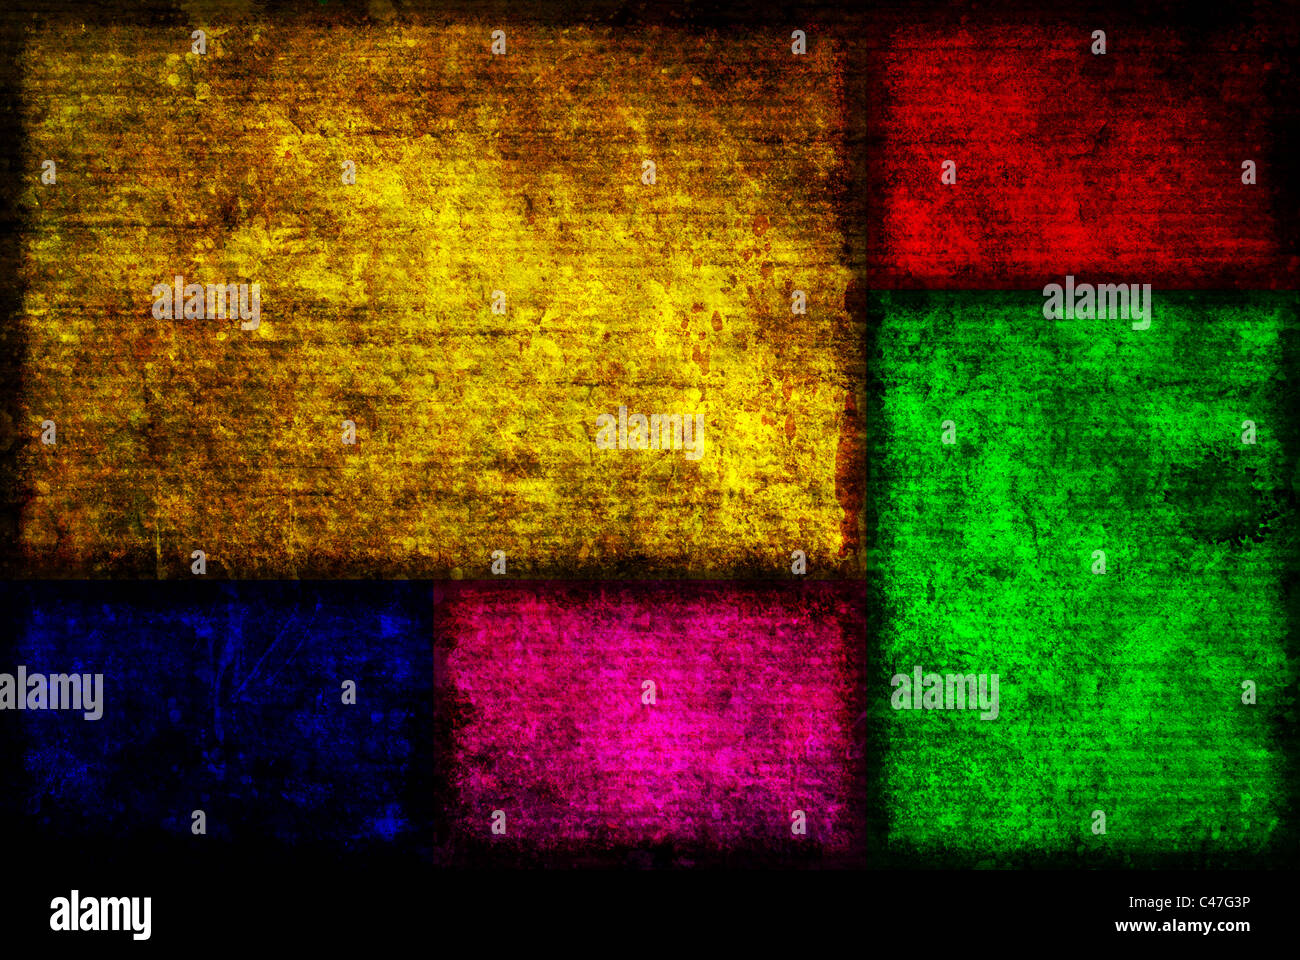 Immagine di sfondo di cinque diversi colori scatole di Fibonacci in un stile grunge. Foto Stock